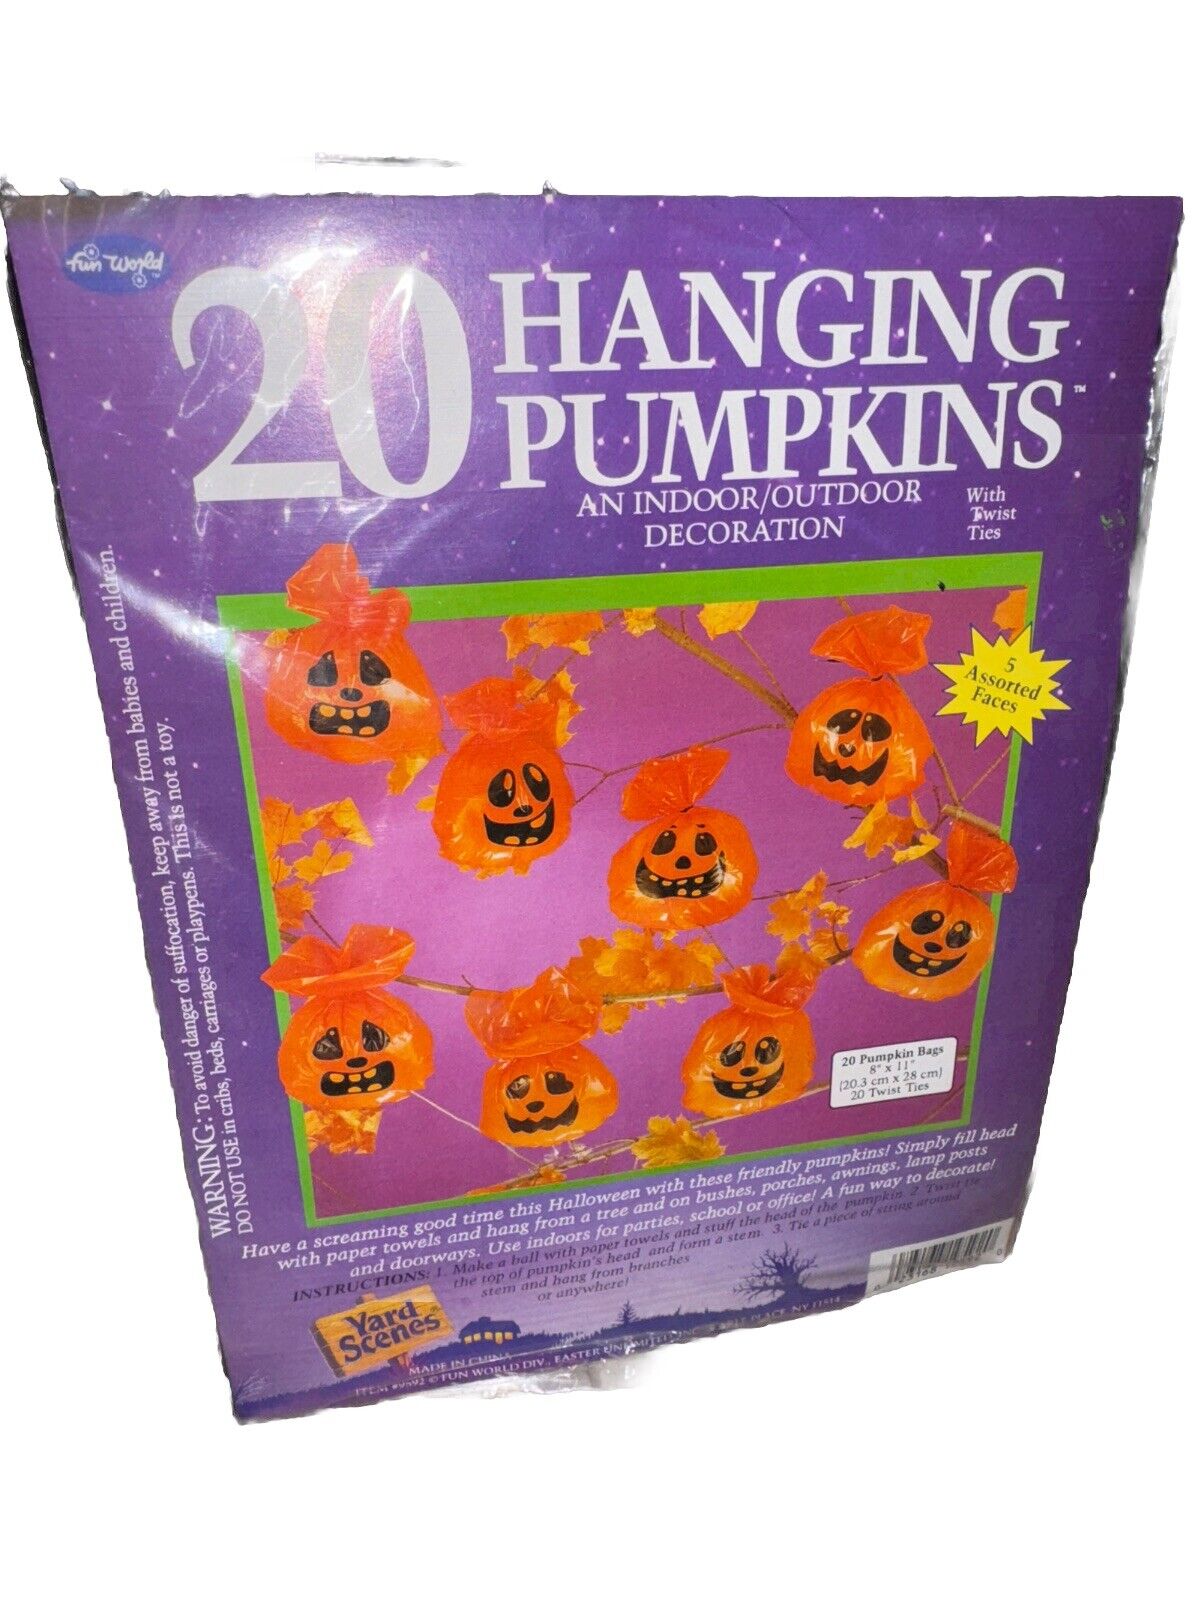 Vintage 20 Halloween Hanging Pumpkins Indoor~Outdoor Decoration